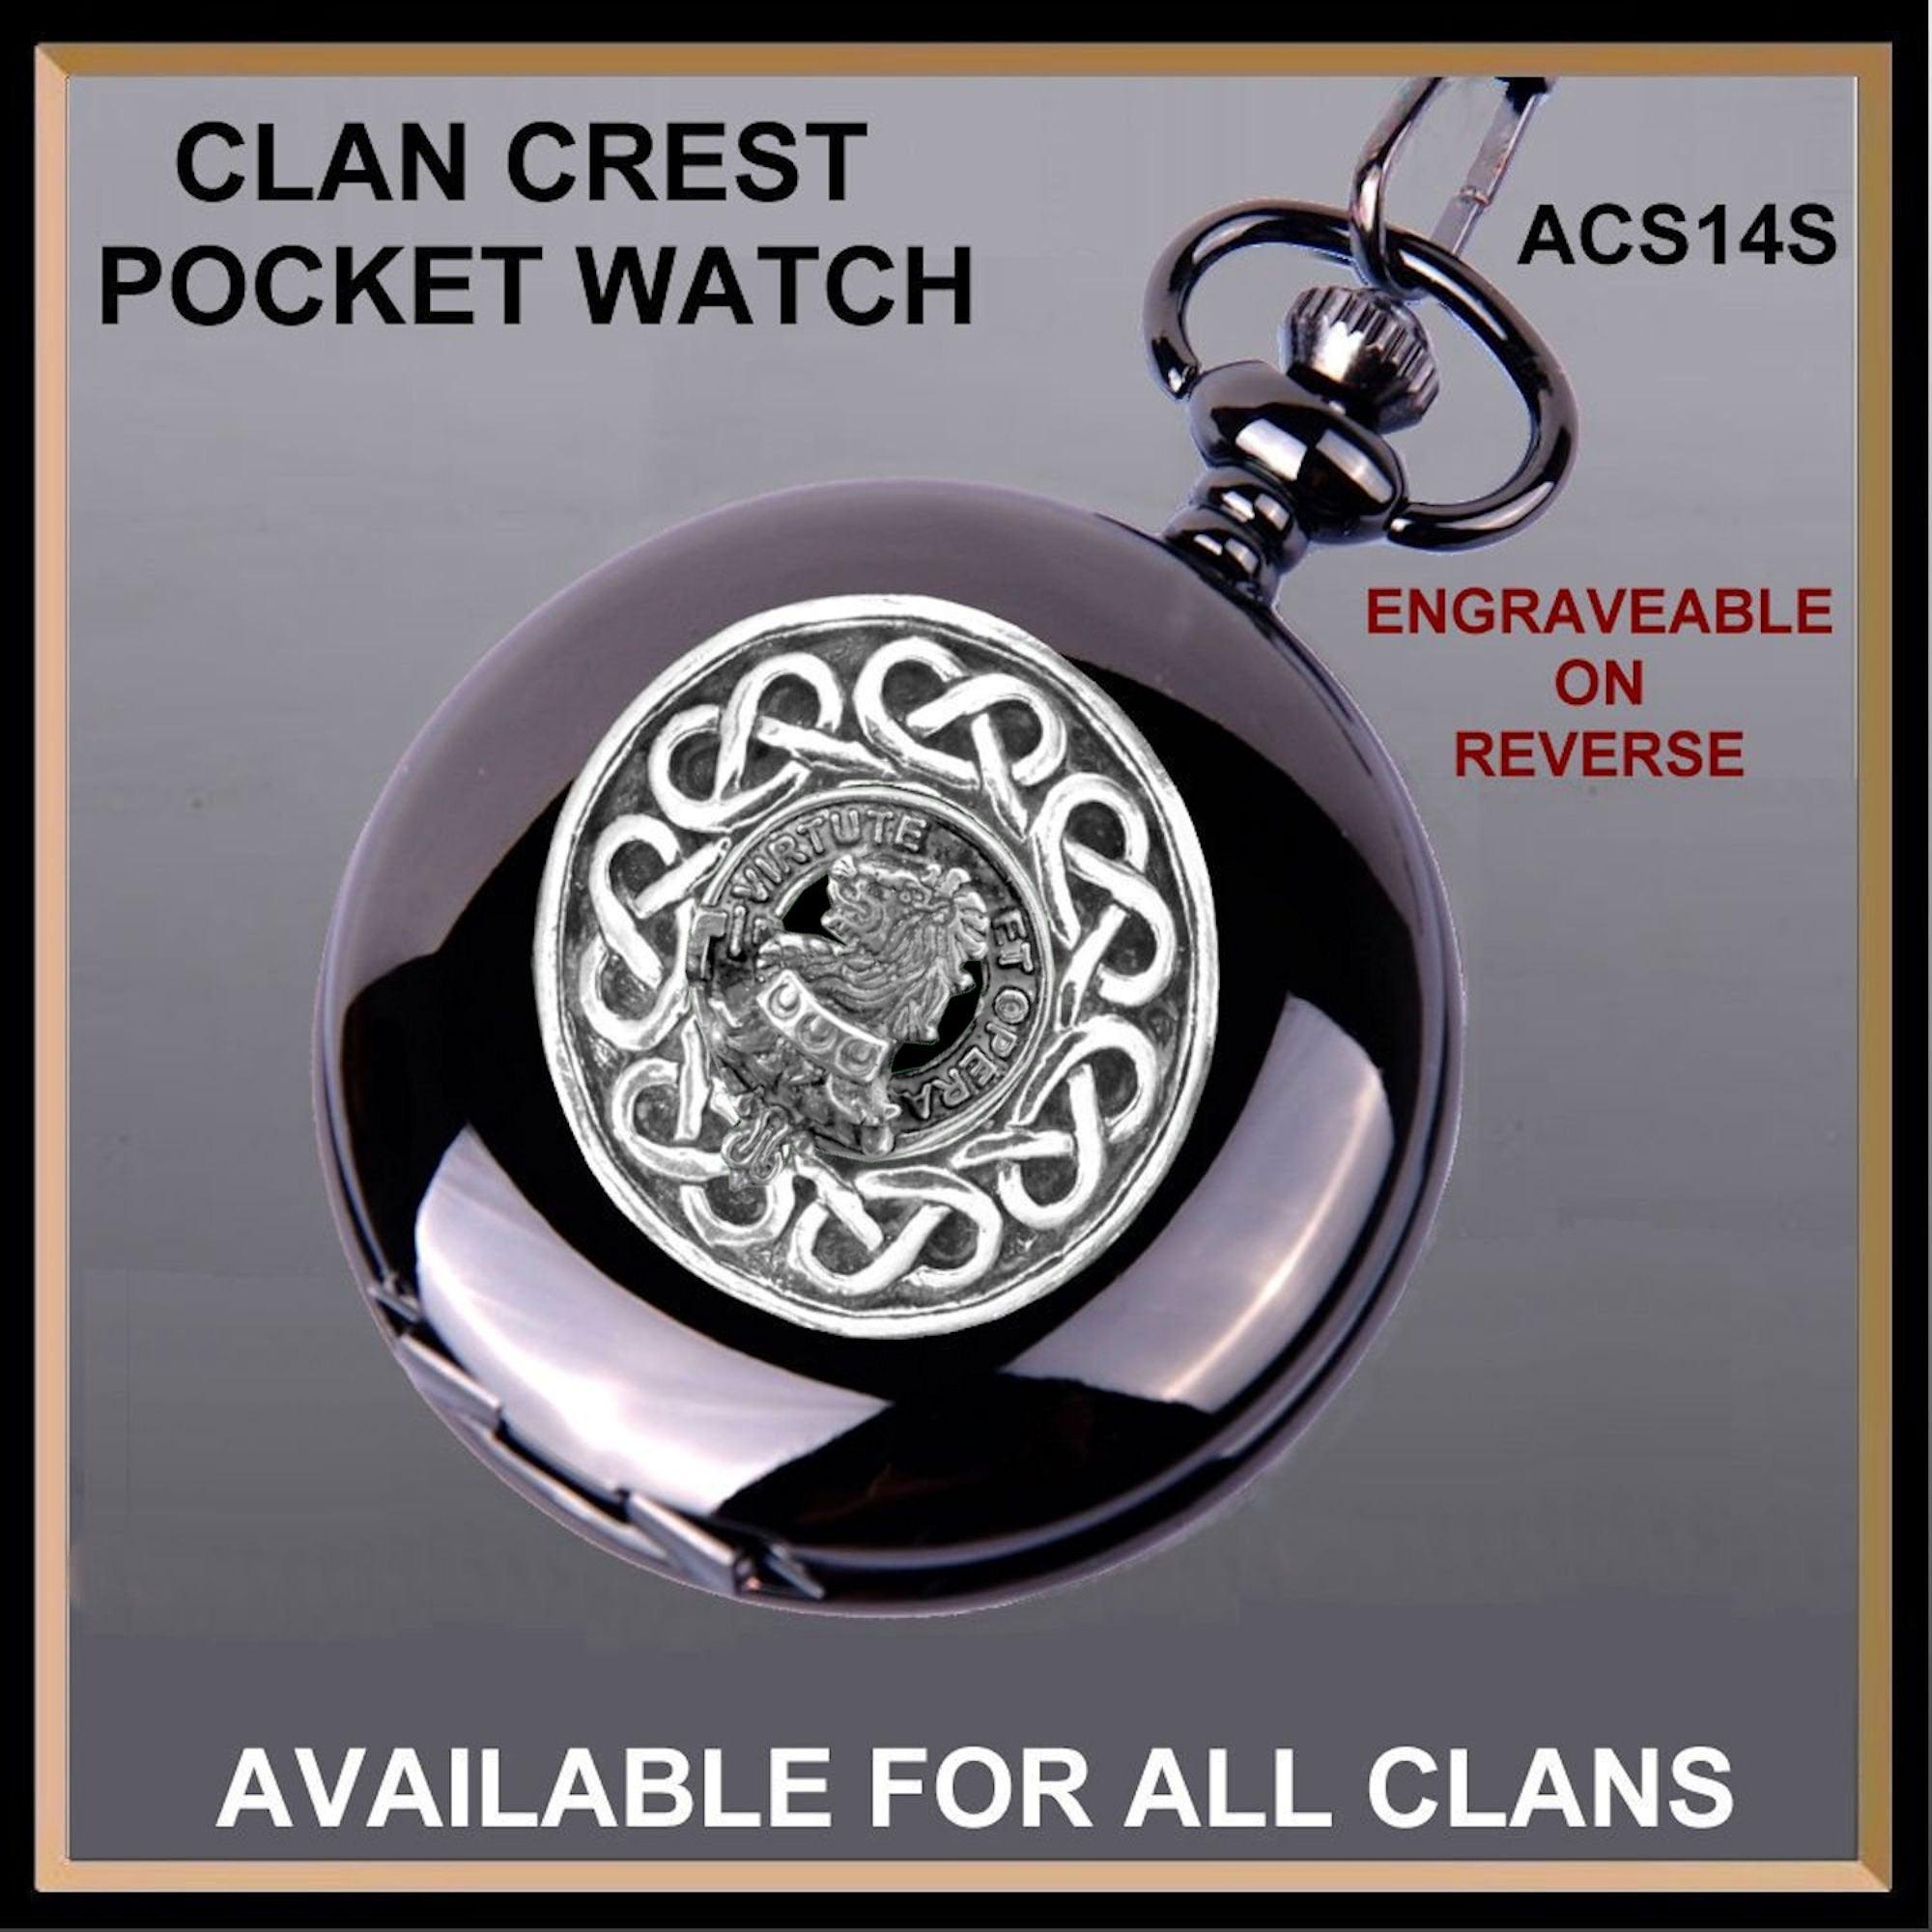 Pentland Scottish Clan Crest Pocket Watch